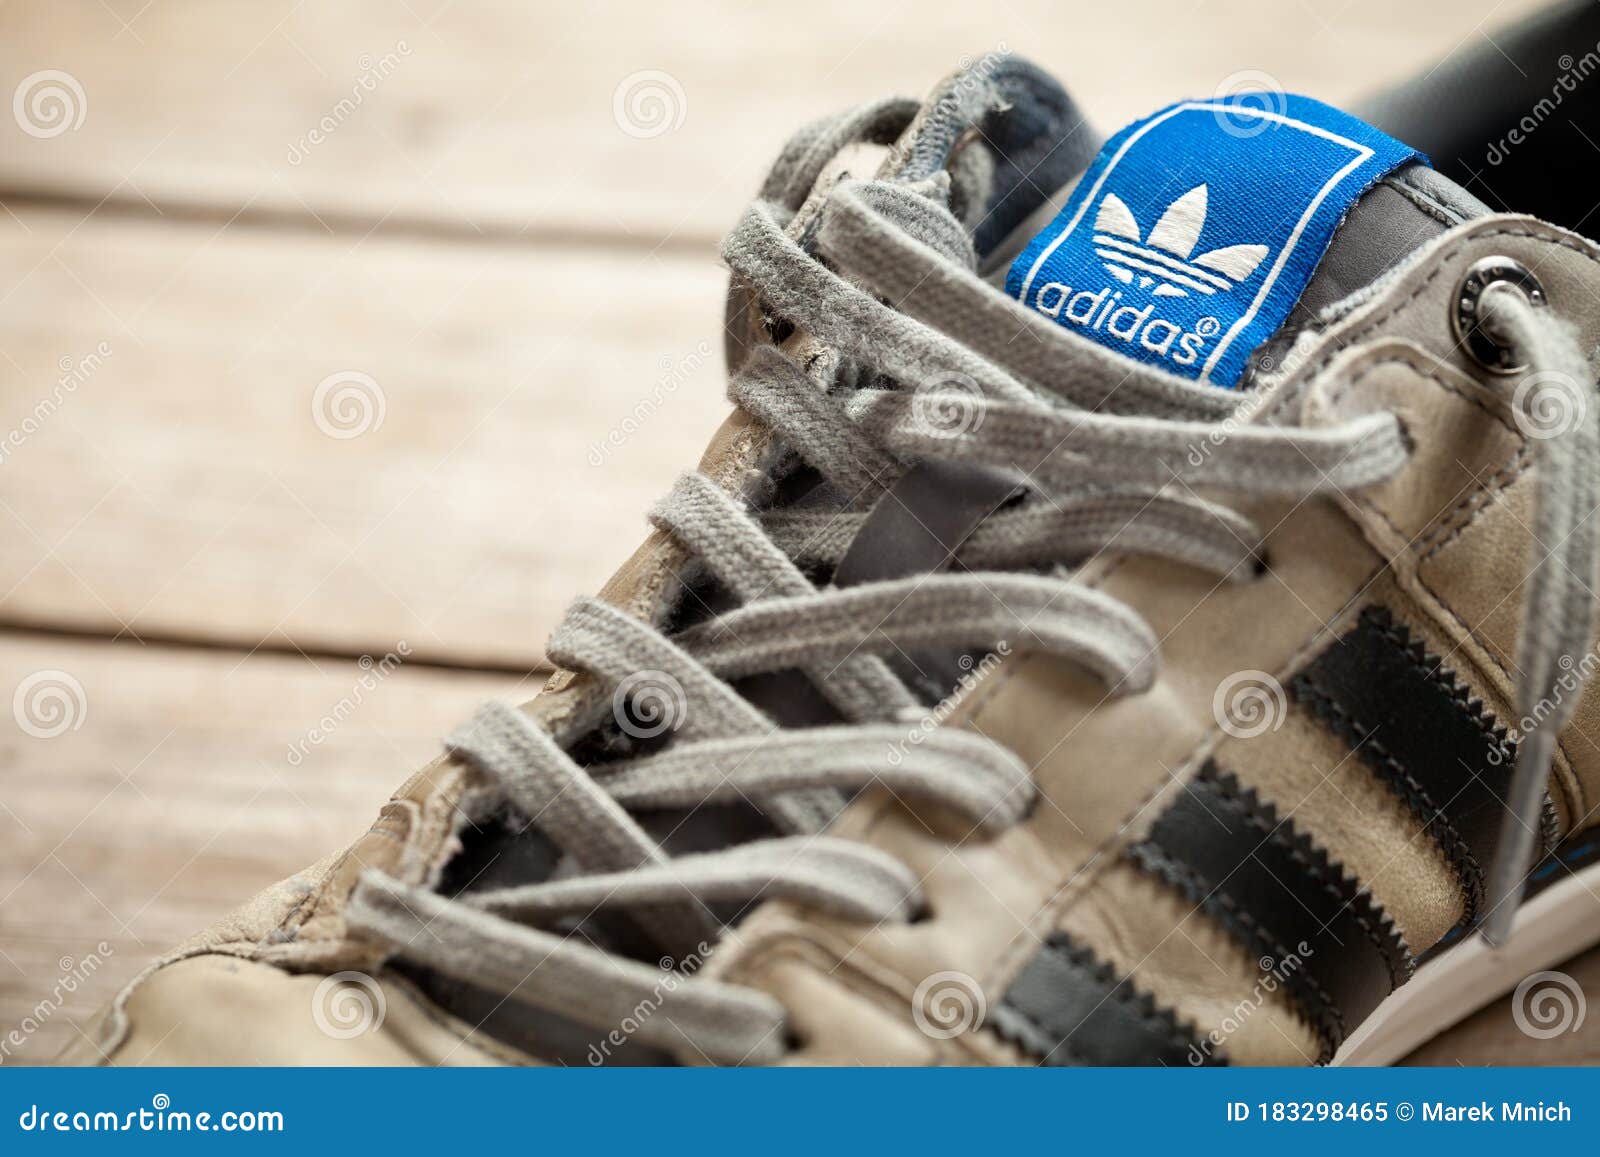 Puñado especificar Organo Used adidas shoe editorial image. Image of detail, focus - 183298465